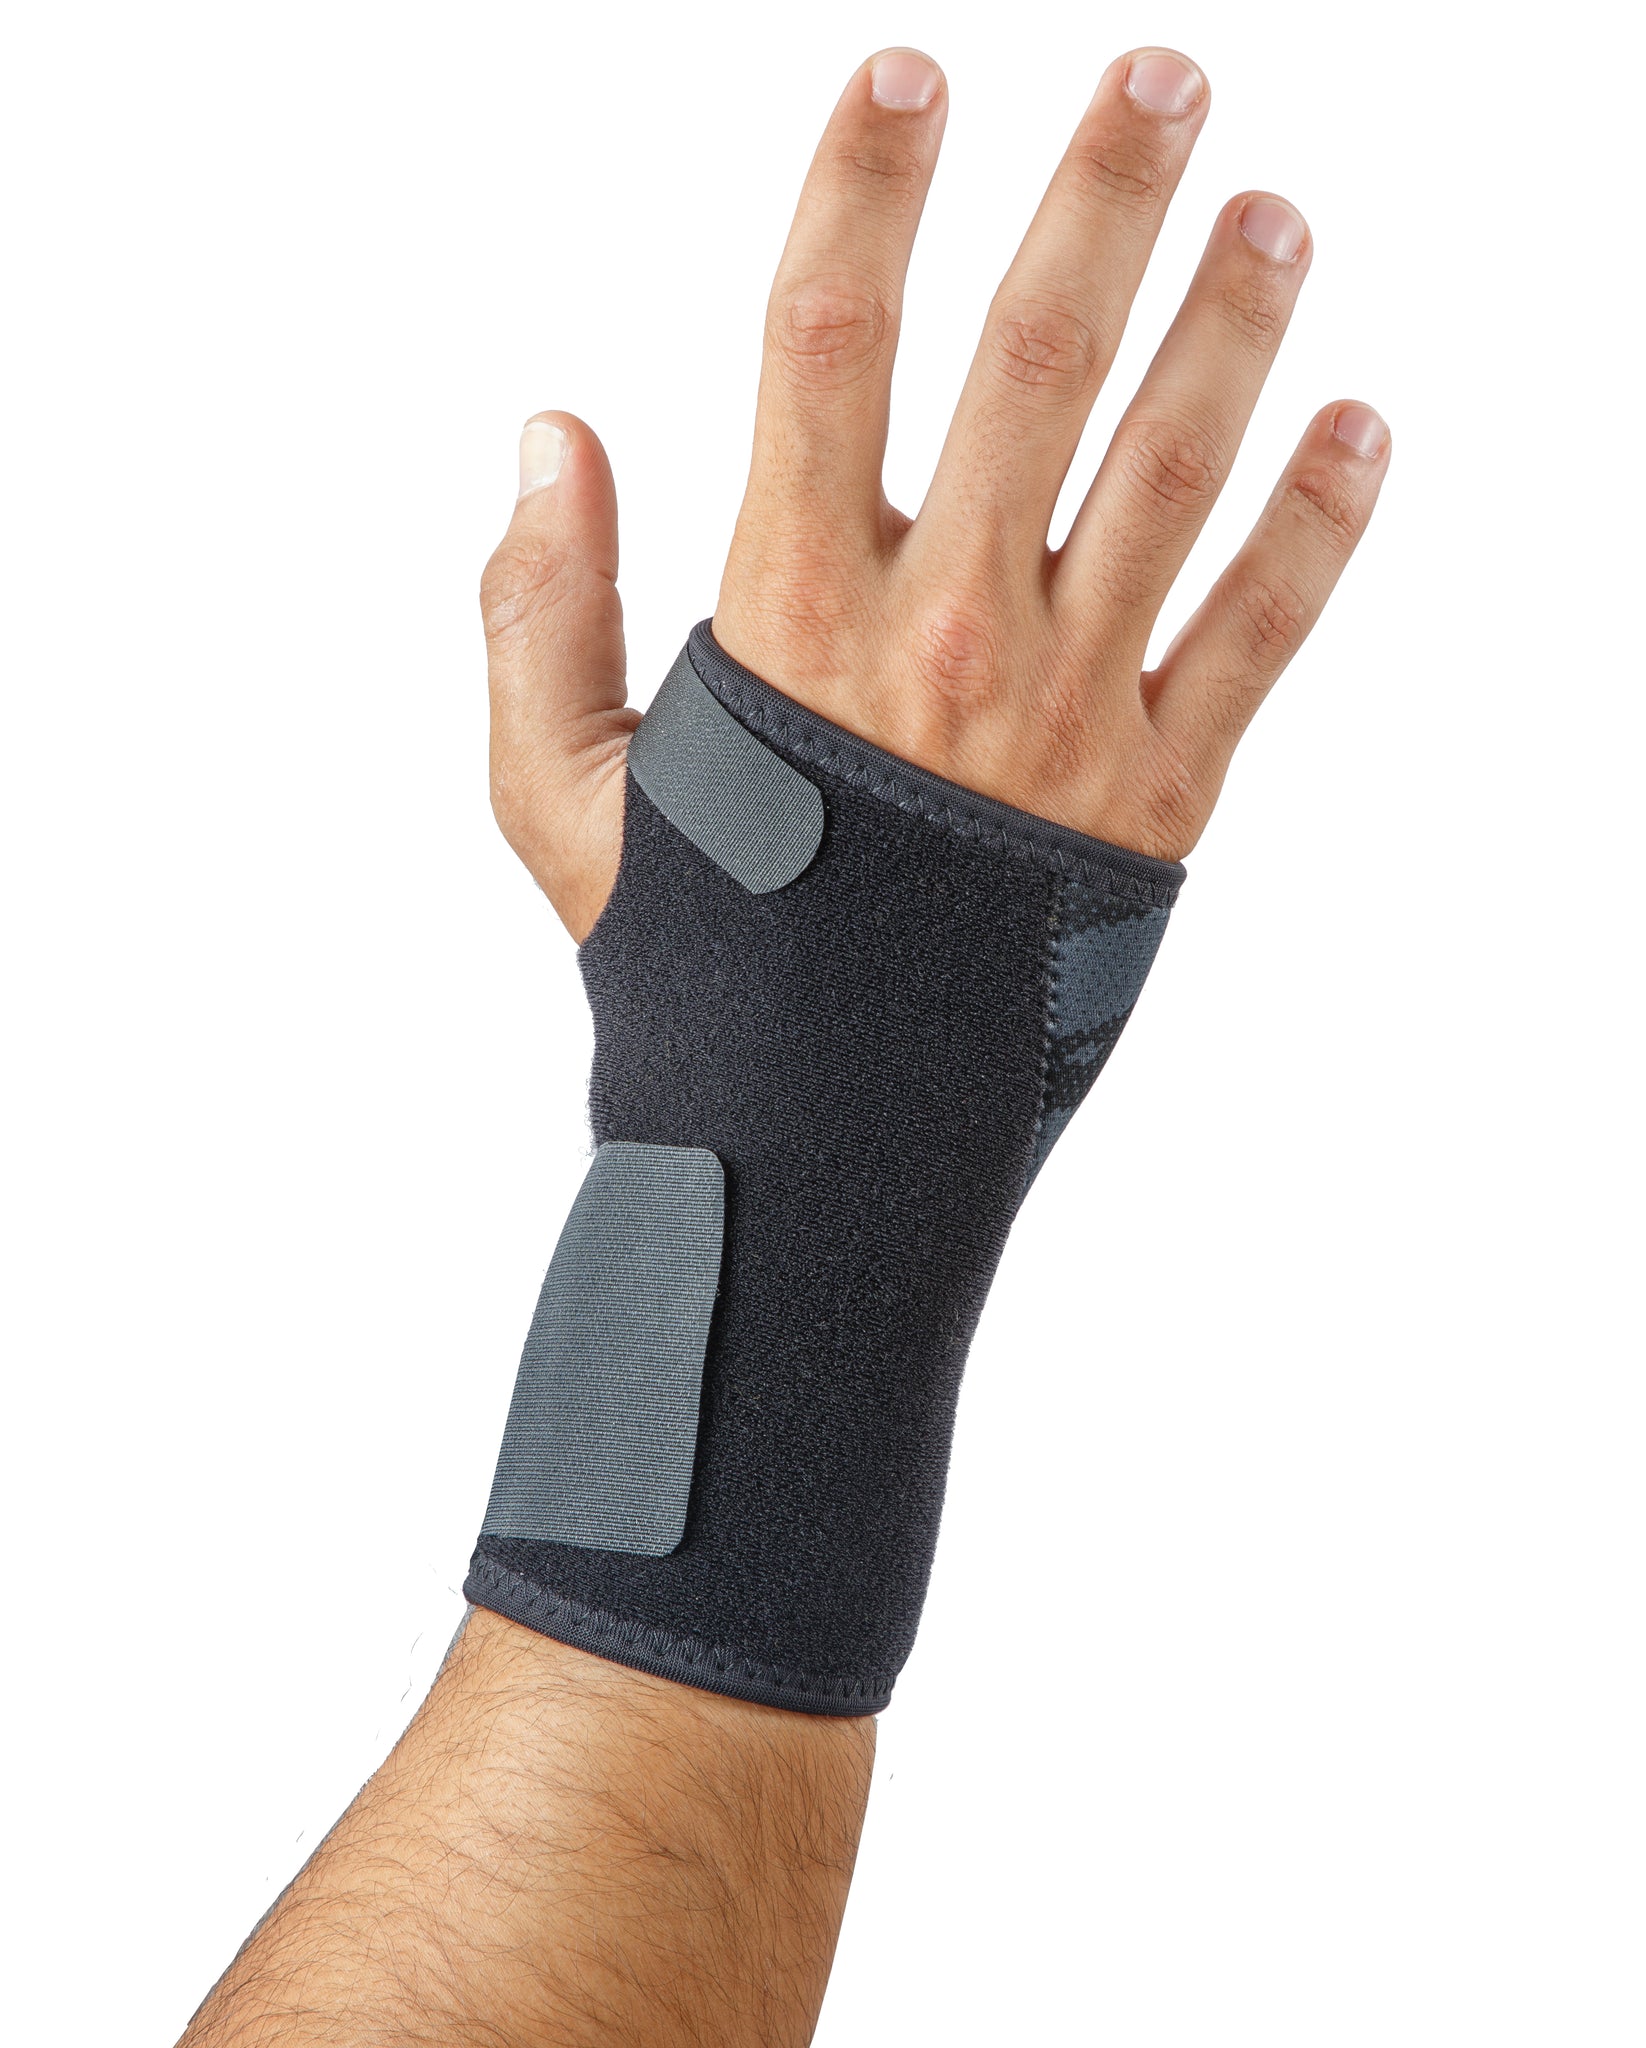 Mövibrace Dynamic Wrist Splint Brace - Available in Right or Left – FlexaMed